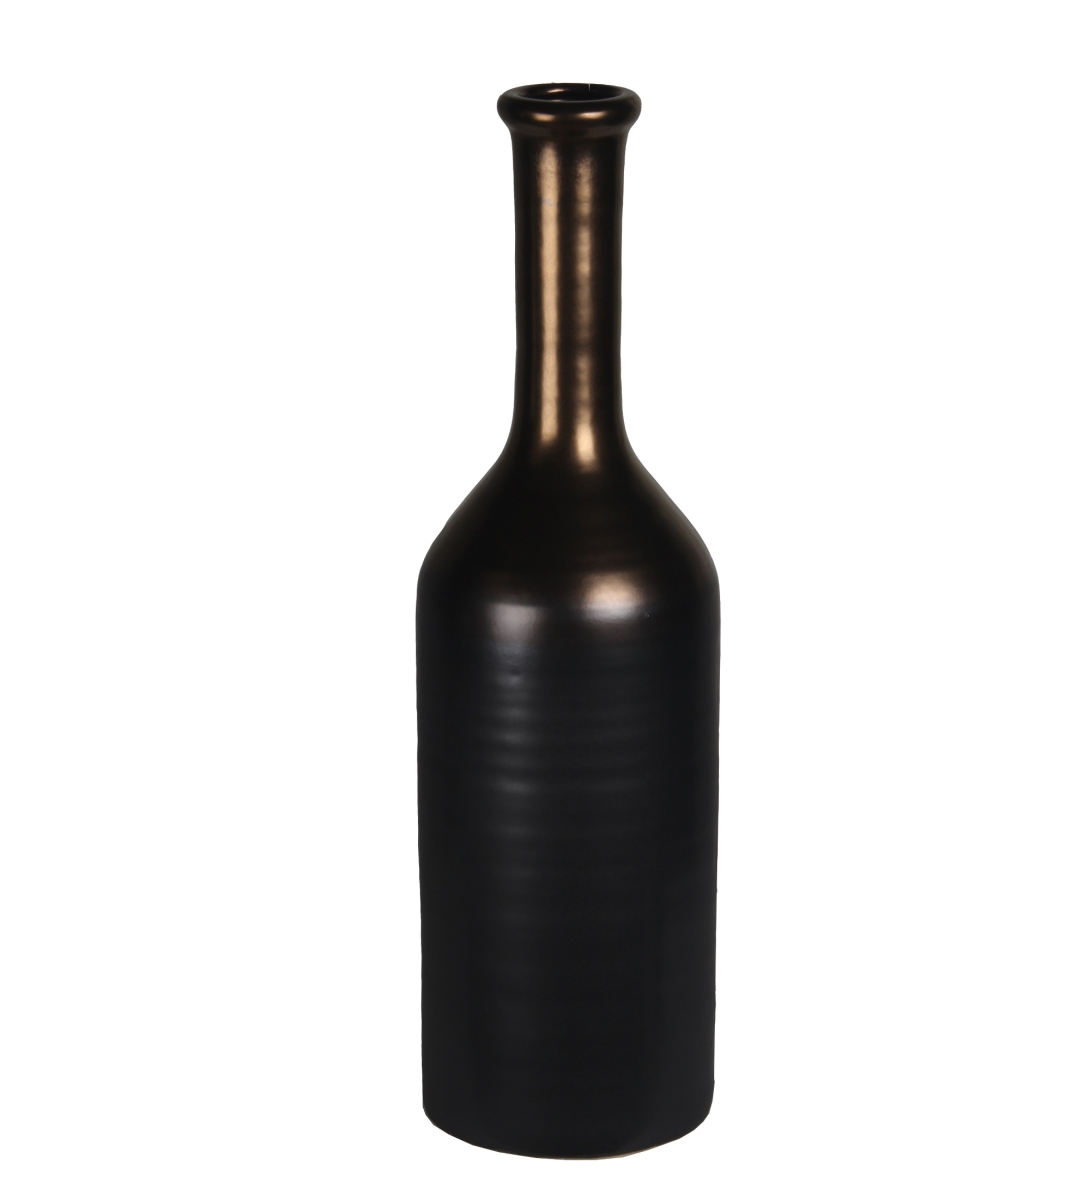 78198 6 X 6 X 20 In. Contemporary Copper & Ceramic Vase, Large